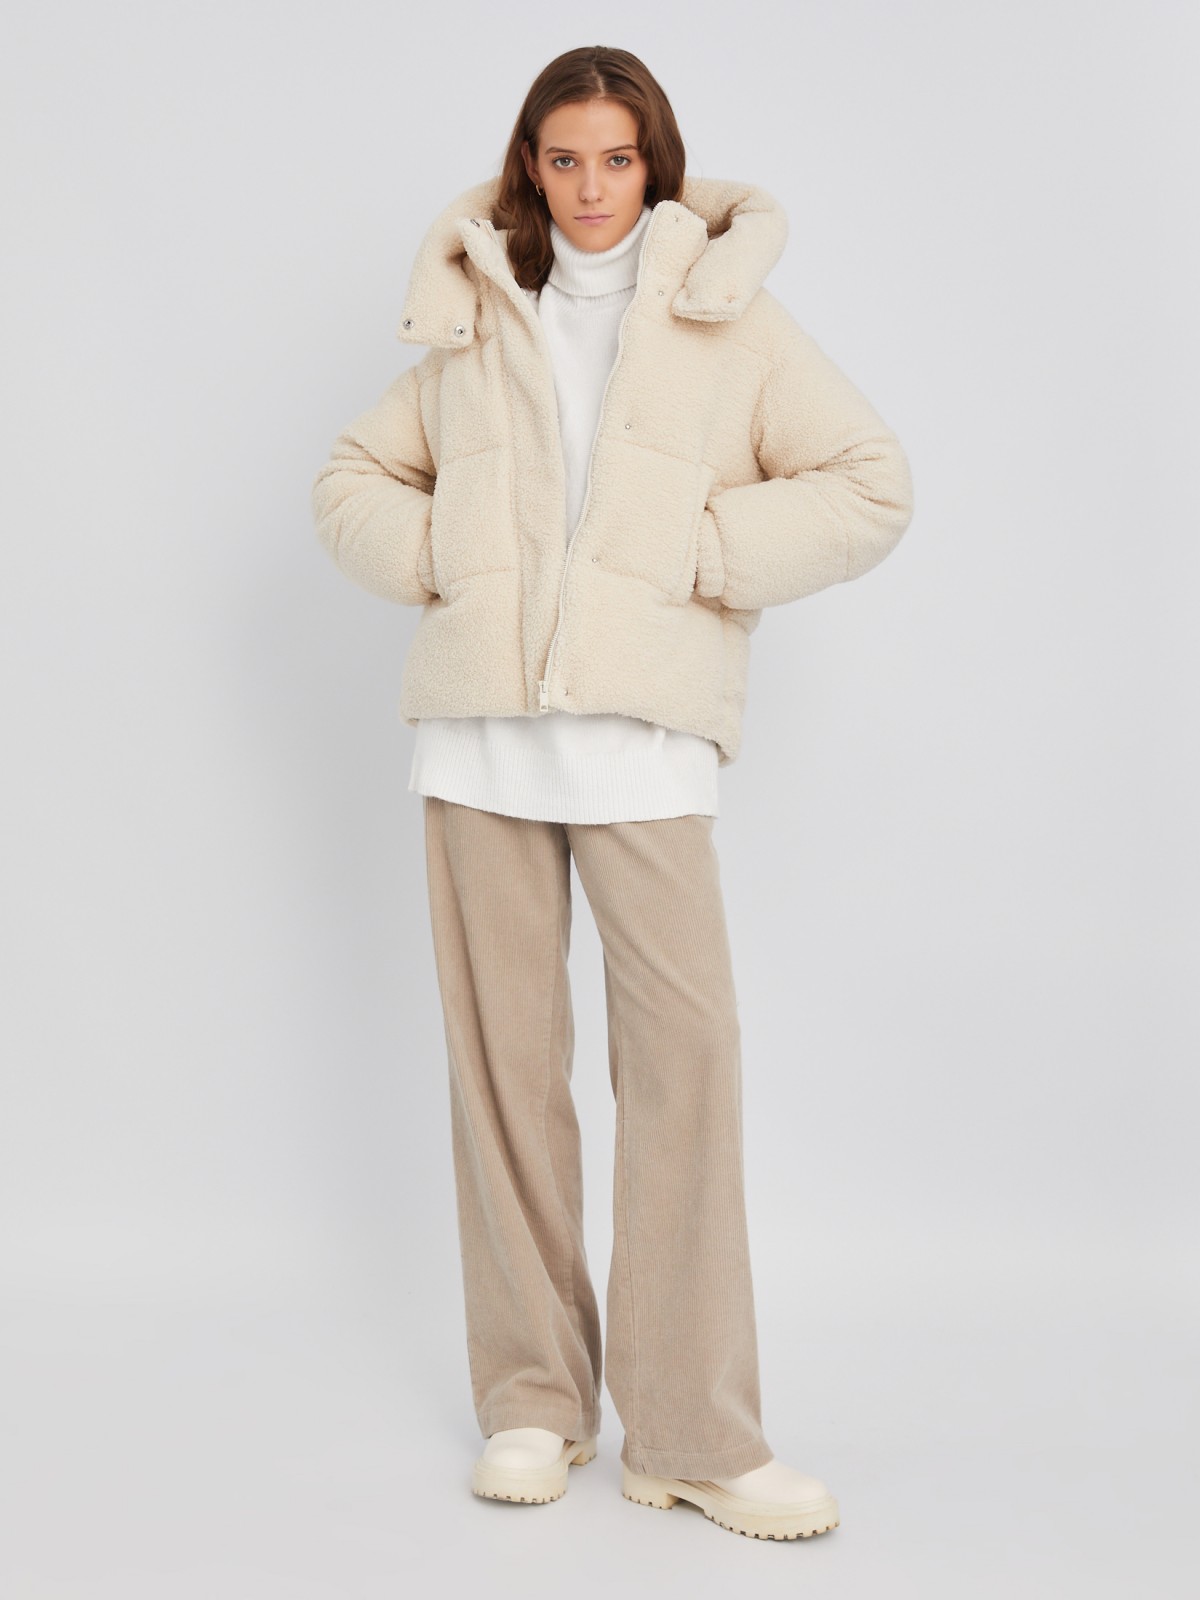 Короткая тёплая куртка-шуба из экомеха с капюшоном и двойным воротником zolla 023345550044, цвет молоко, размер XS - фото 2